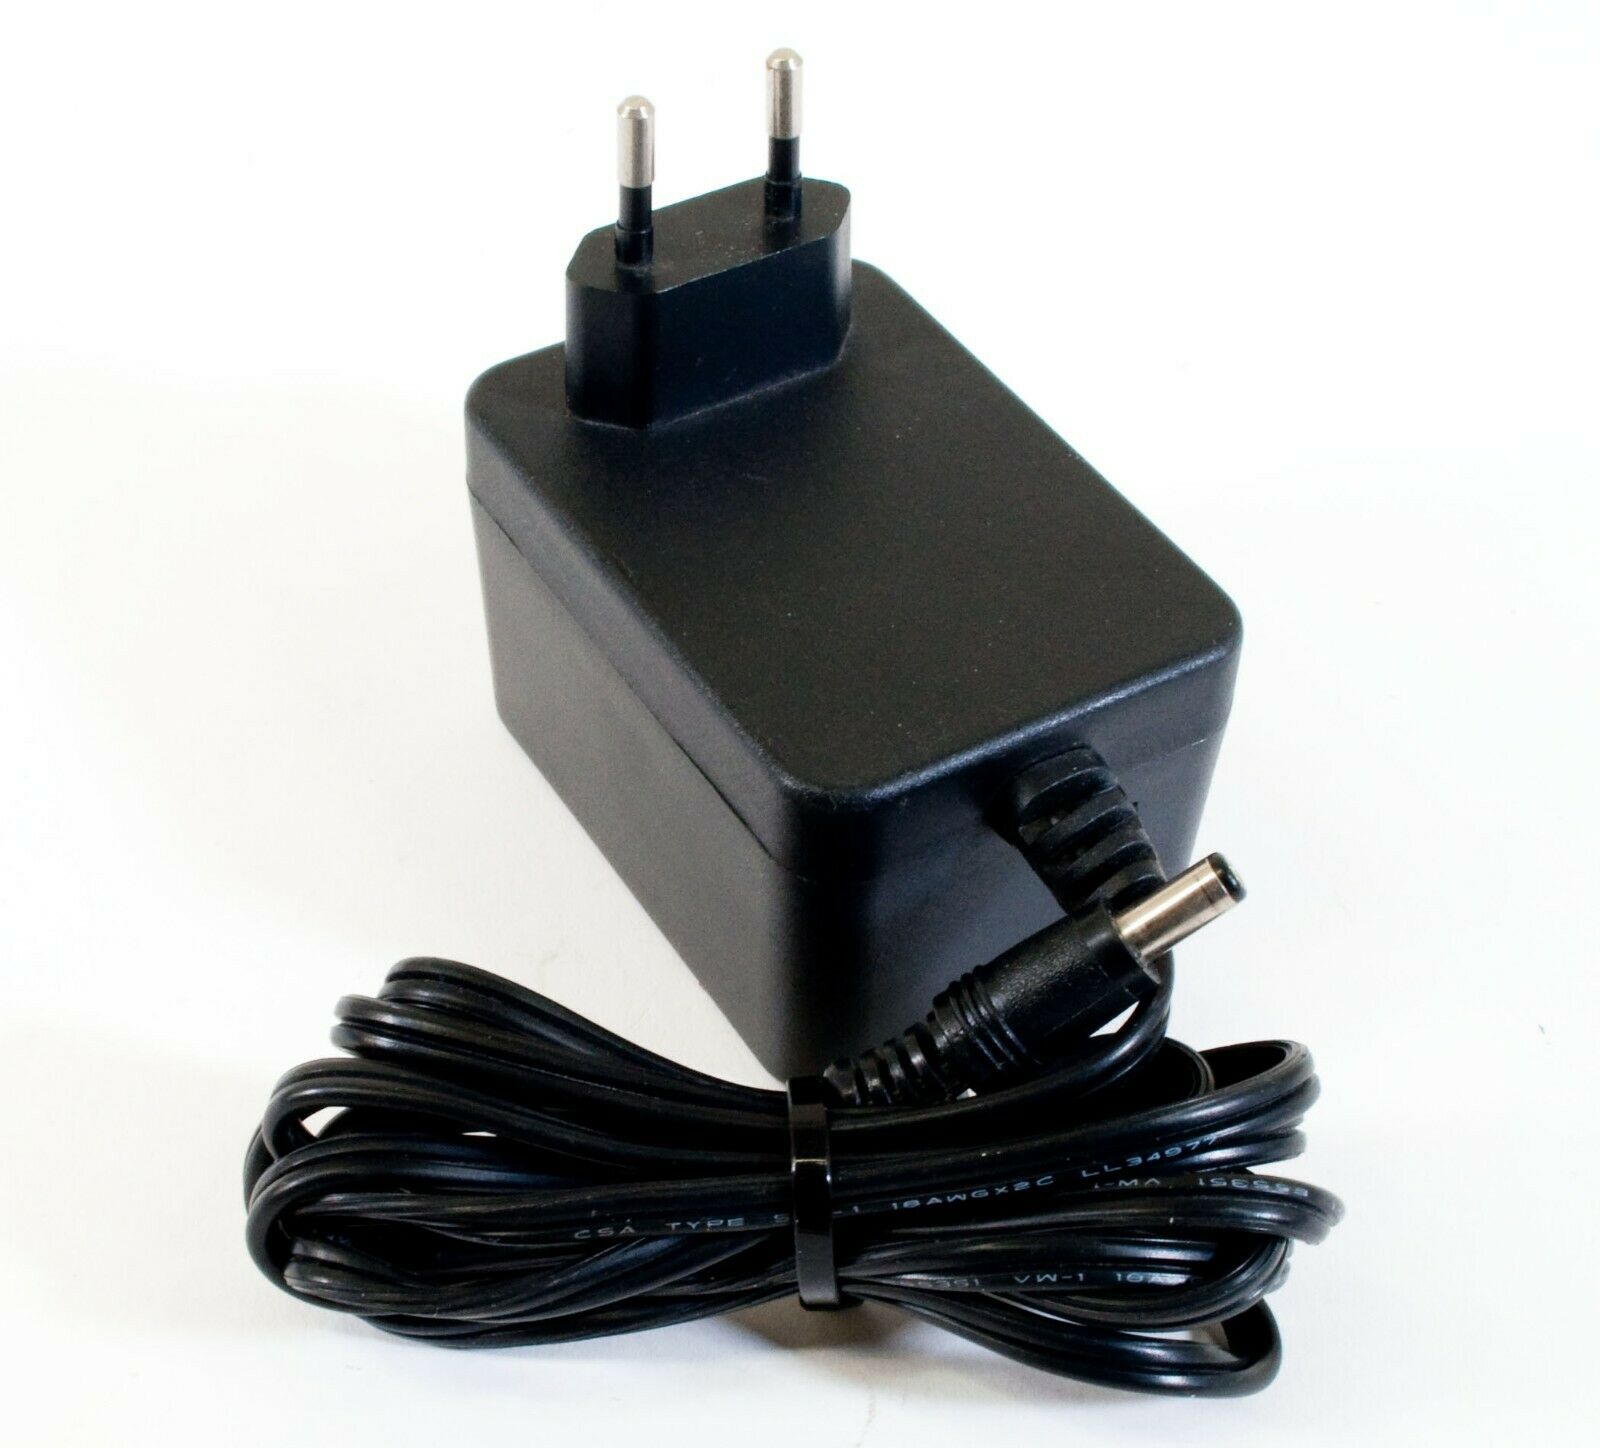 Speclin SL-4801 AC Adapter 13.5V 750mA Original Power Supply Europlug Output Current: 750 mA Voltage: 13.5 V MPN: SL - Click Image to Close